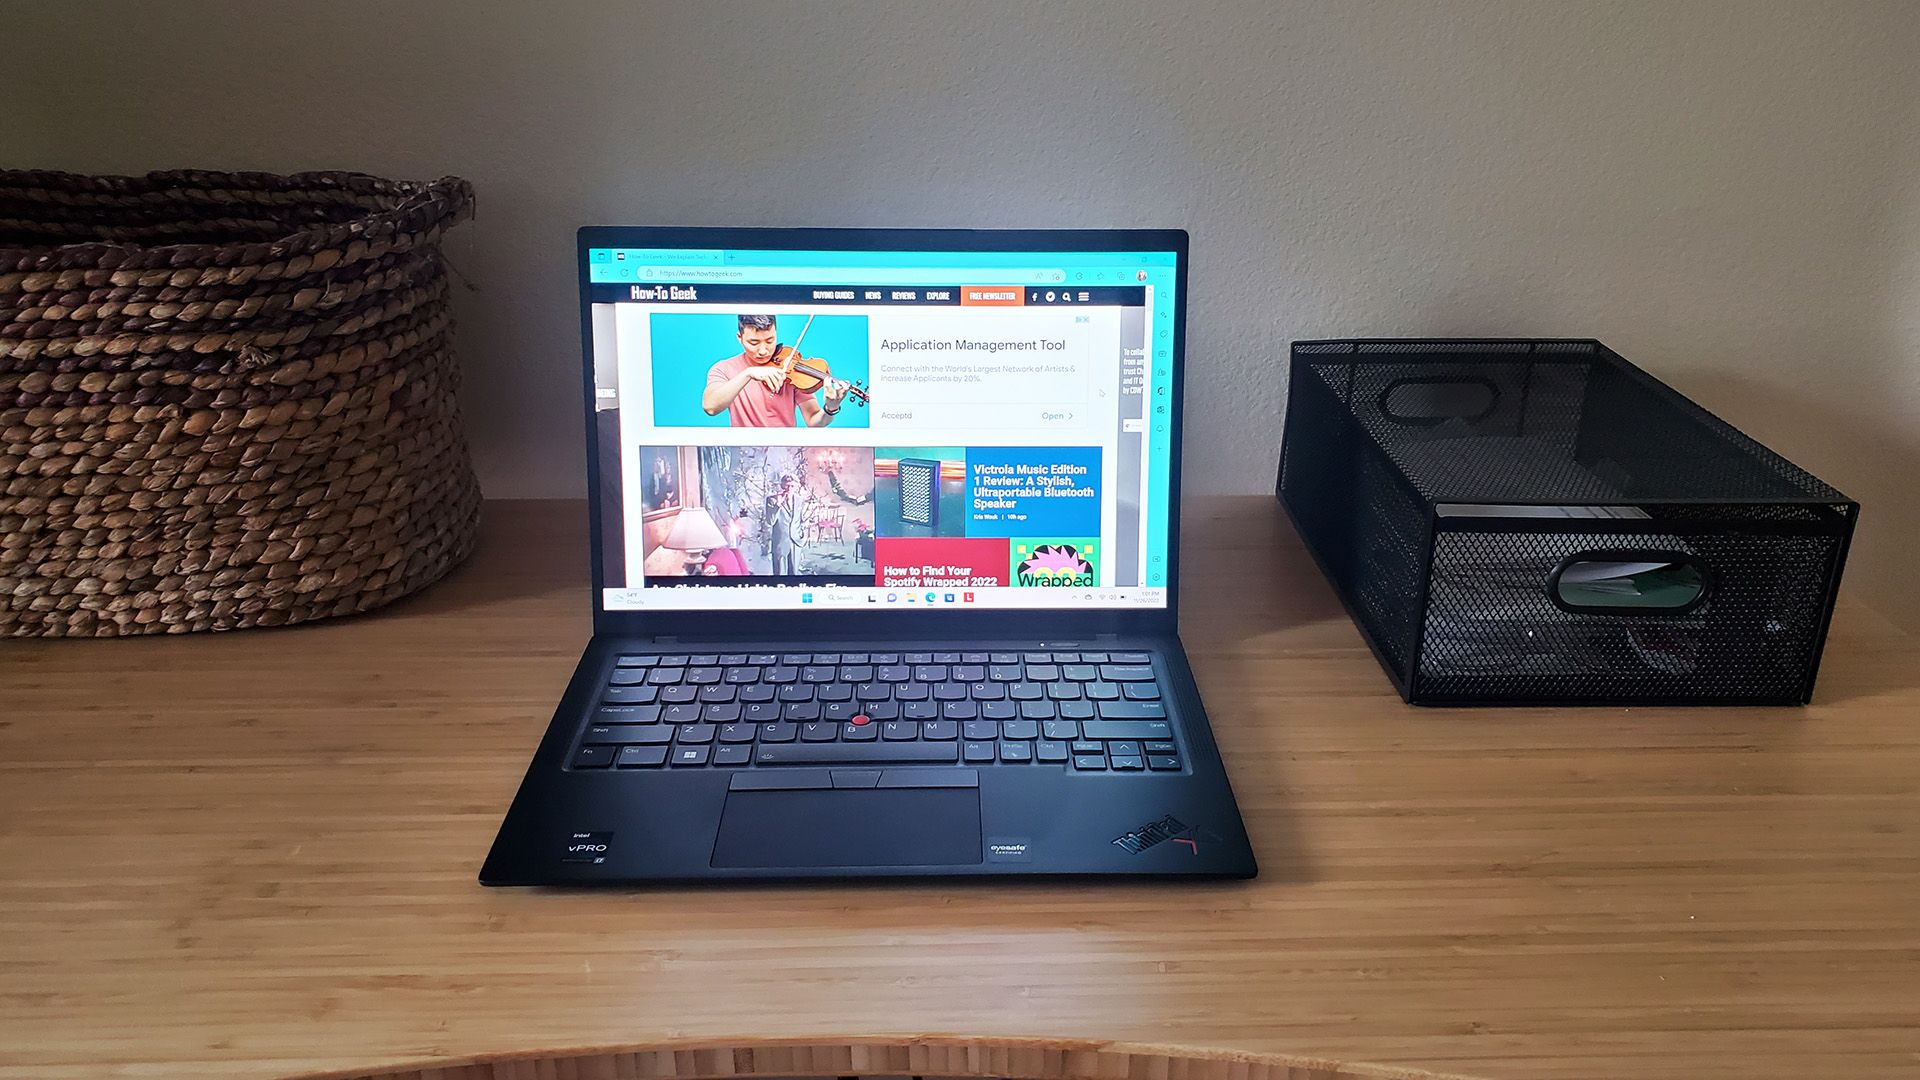 O laptop Lenovo ThinkPad X1 Carbo aberto sobre uma mesa.